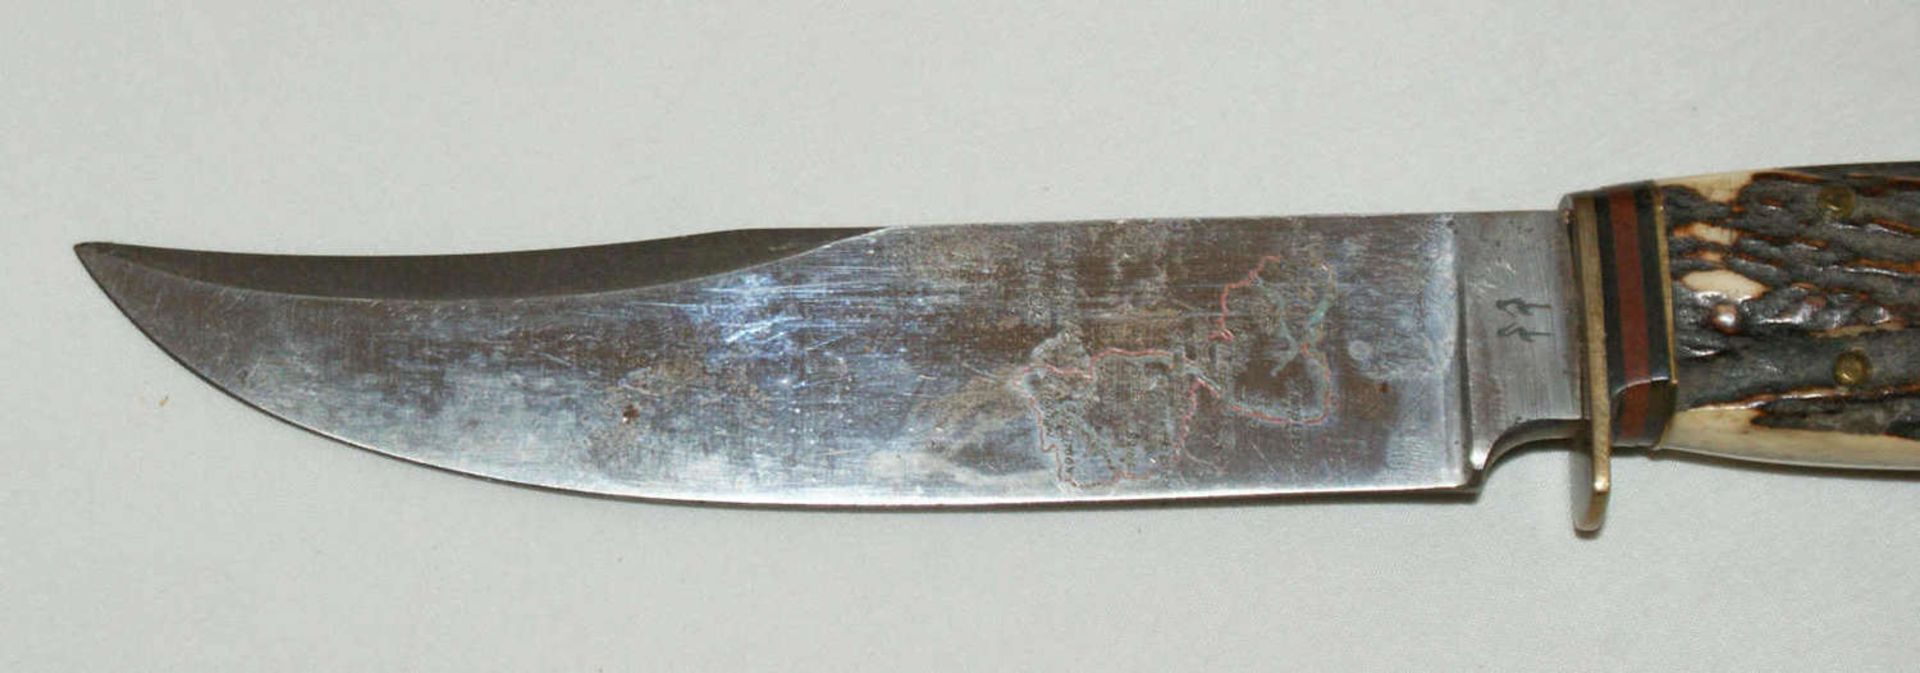 Fa. Robert Klaas Solingen, Jagdmesser 2 Storchenpunze mit Hirschhorngriff.Gesamtlänge ca. 23 cm, - Bild 3 aus 4